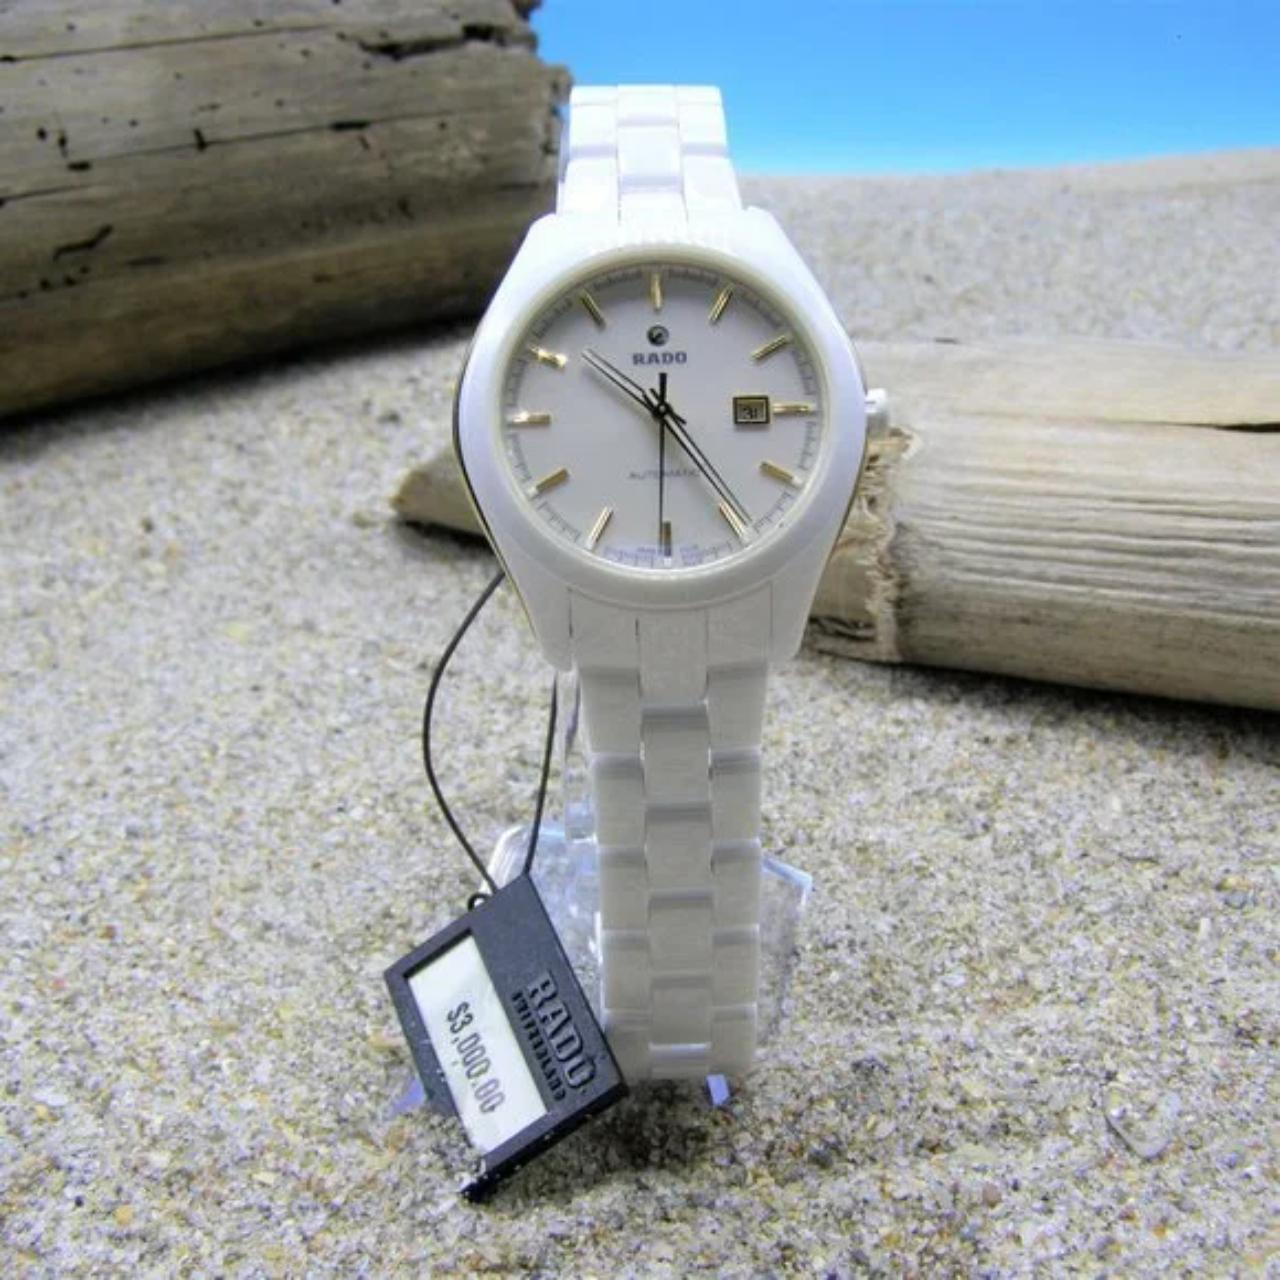 Product Image 1 - Rado Hyperchrome White Women's Watch

White